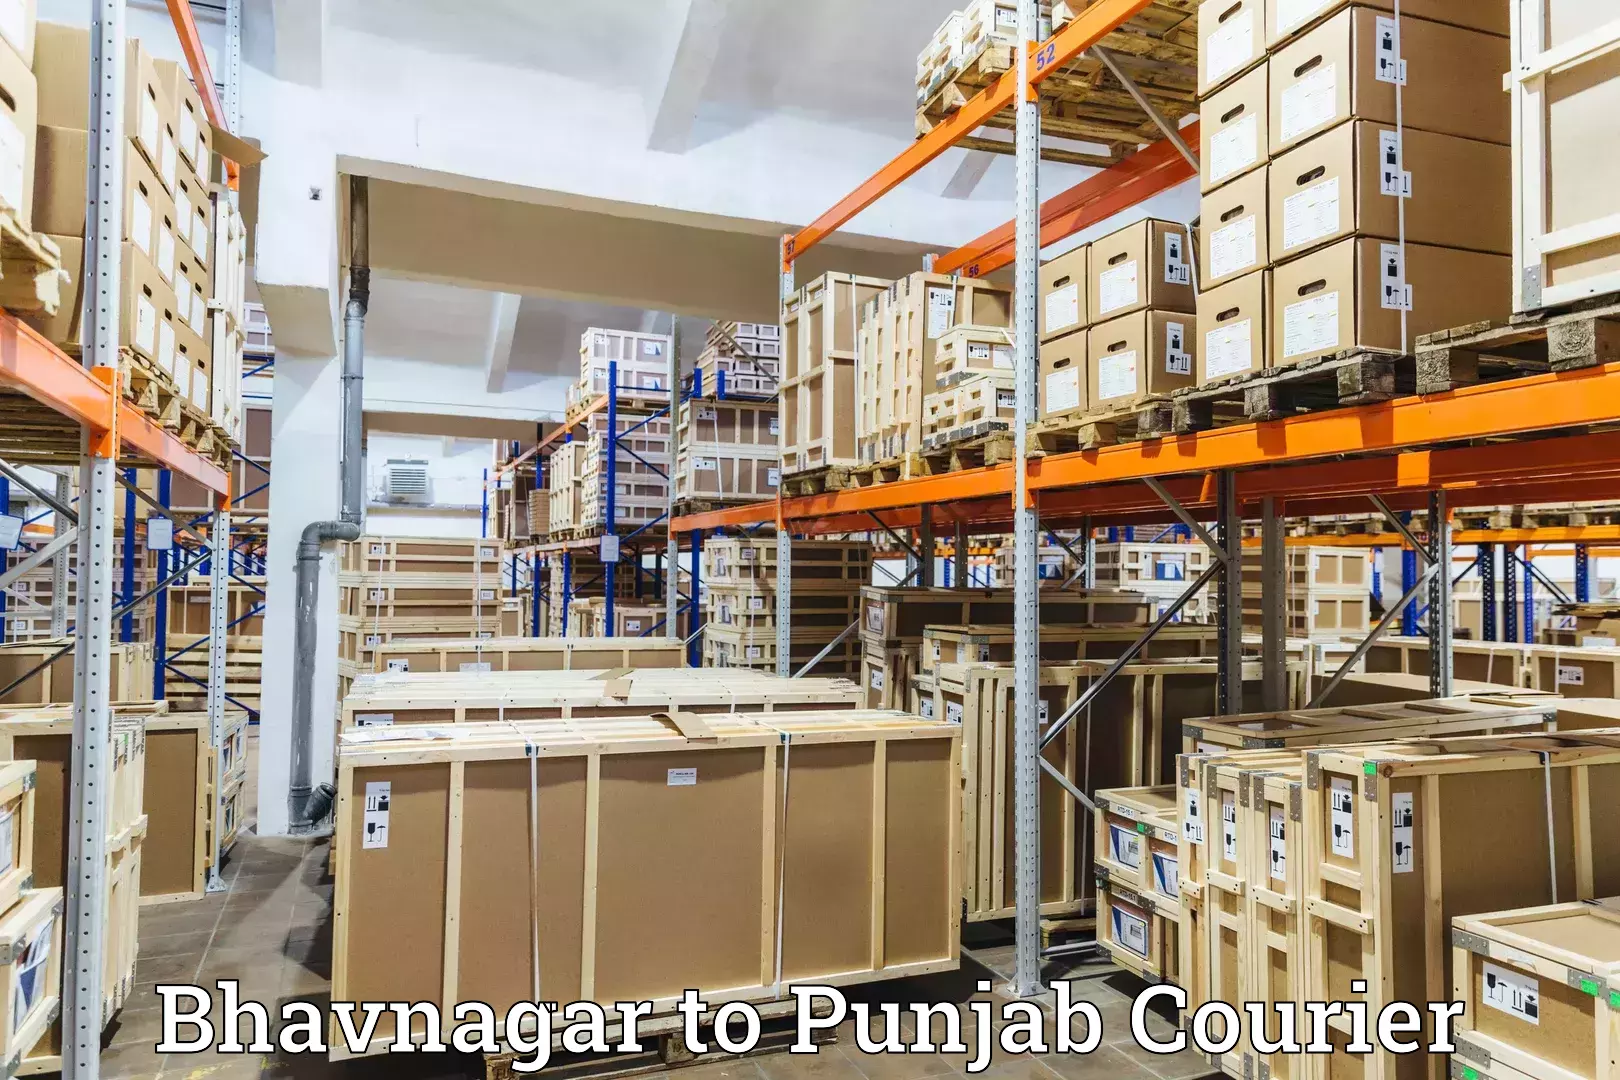 Courier service comparison Bhavnagar to Punjab